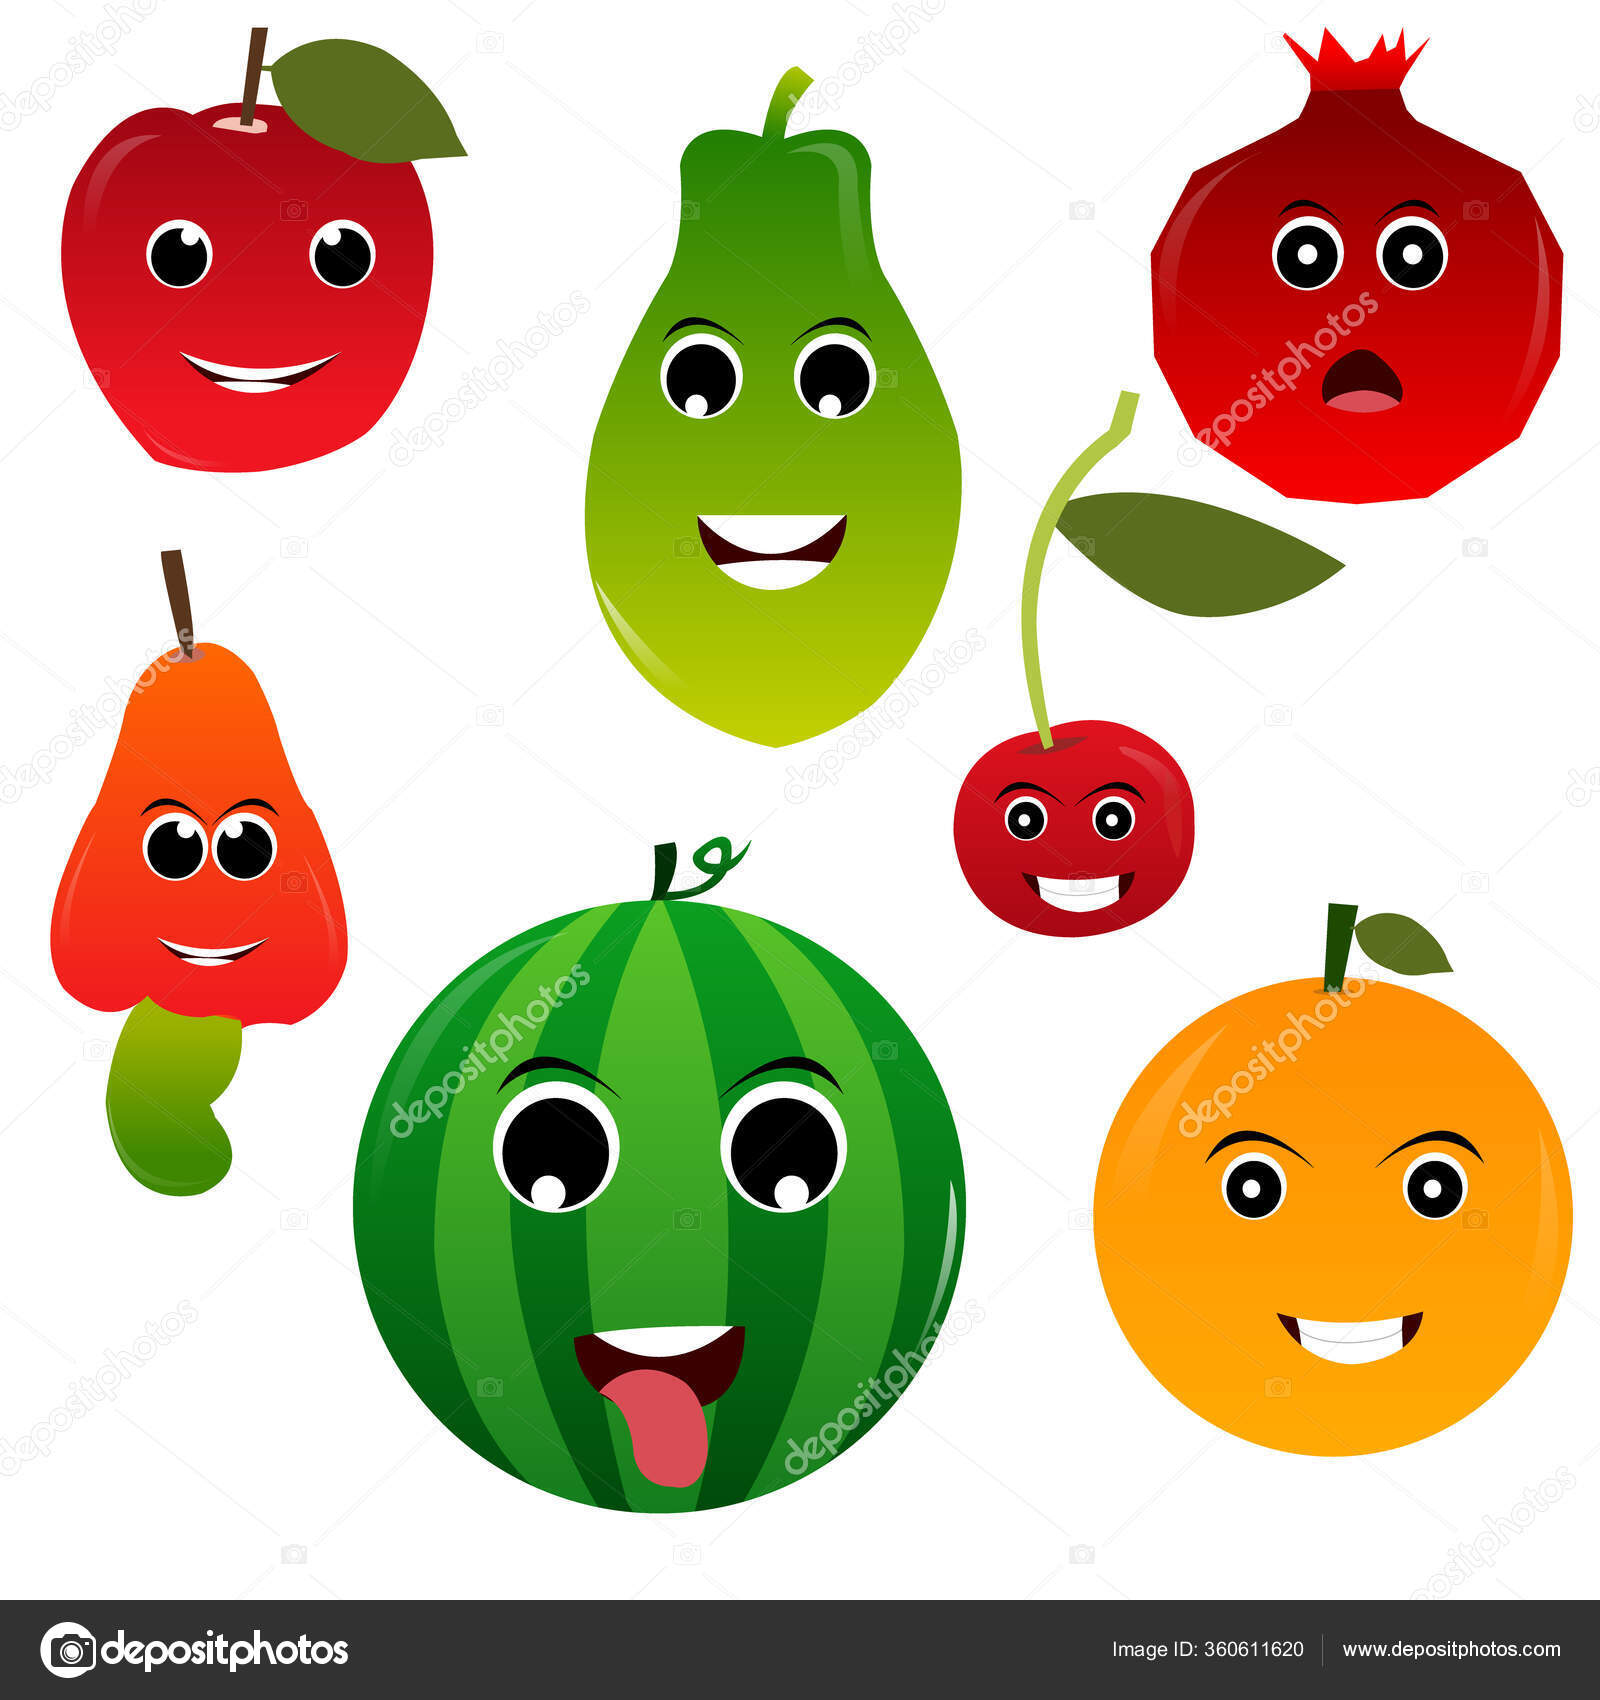 Funny cartoon fruits Vector Art Stock Images | Depositphotos